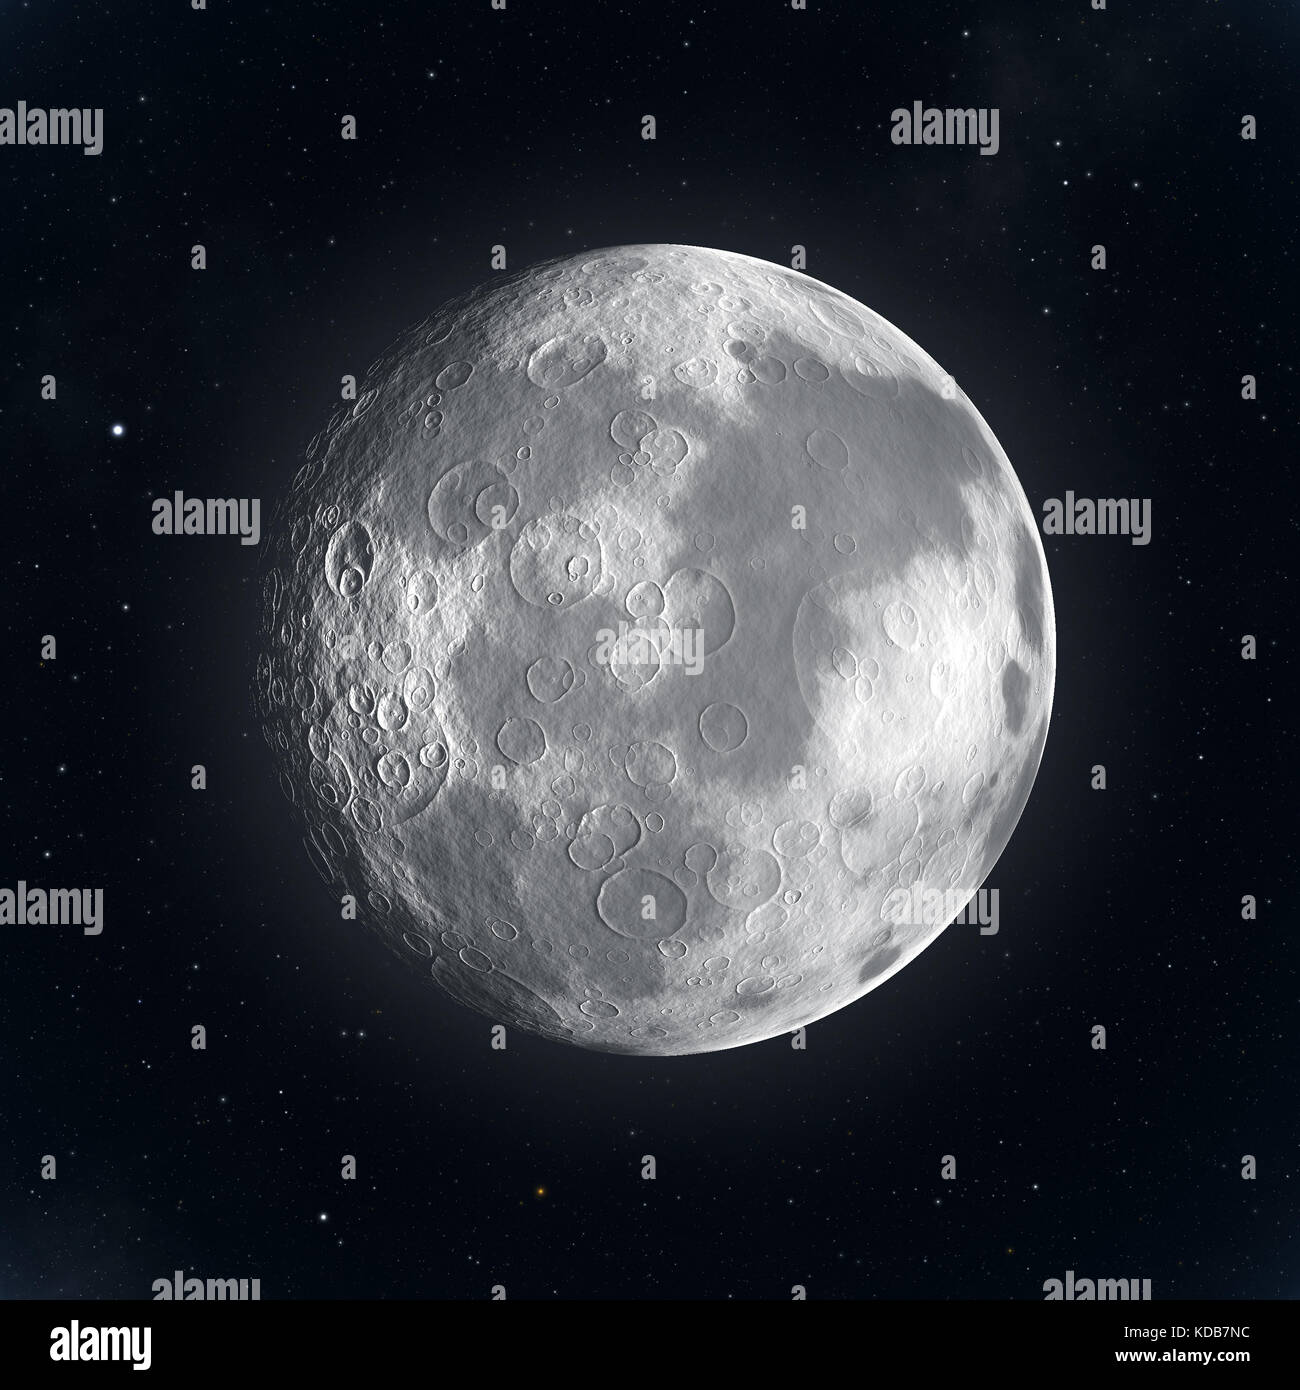 Mond durch Teleskop gegen schwarzen Himmel die Sterne gesehen  Stockfotografie - Alamy